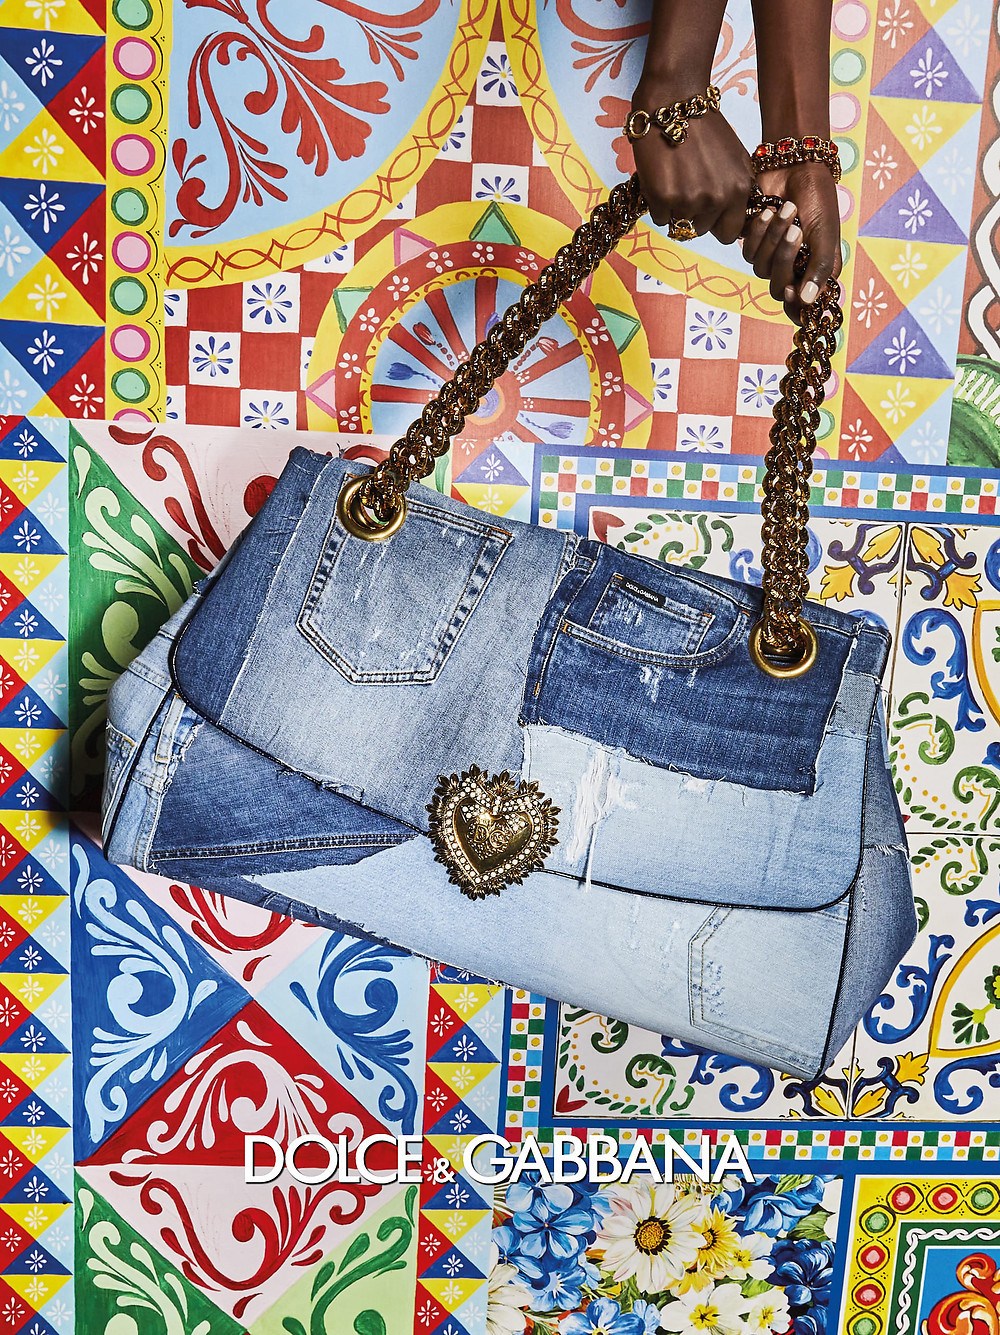 imagen 8 de Jeans y color, así son las mujeres Dolce & Gabbana y sus bolsos la próxima primavera.